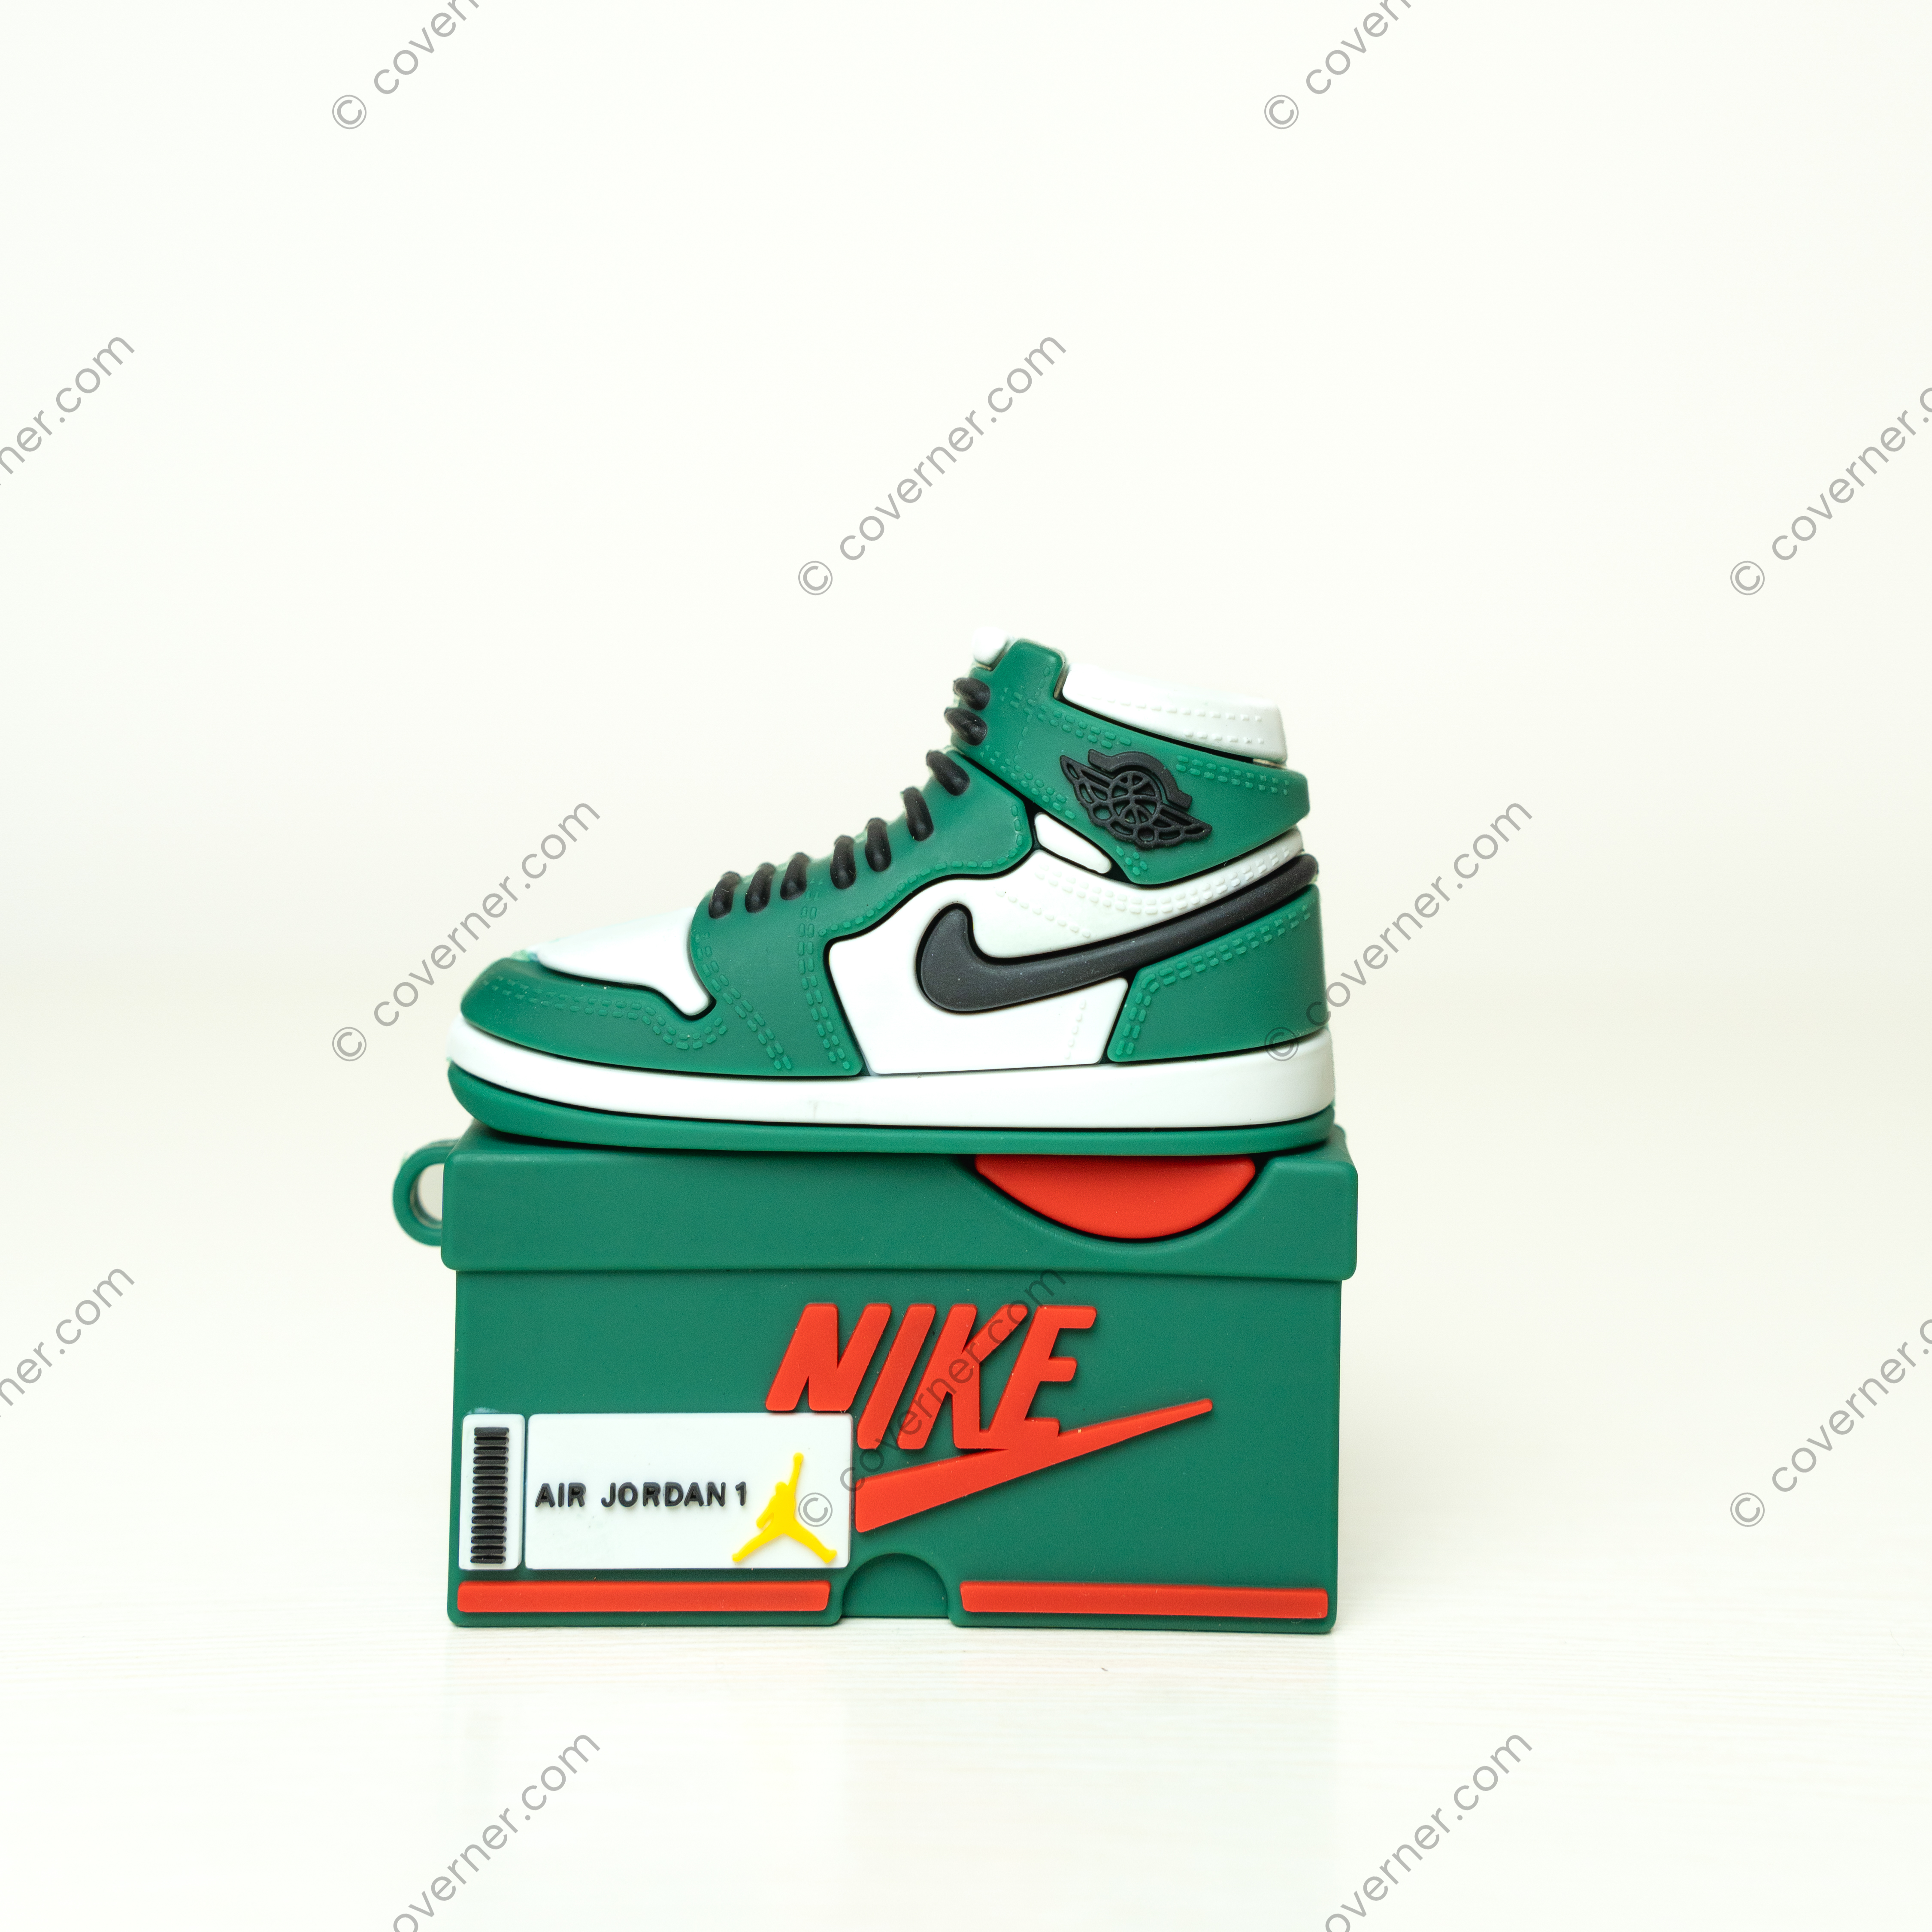 Sneaker Airpods Cases - Air Jordan 1 Green